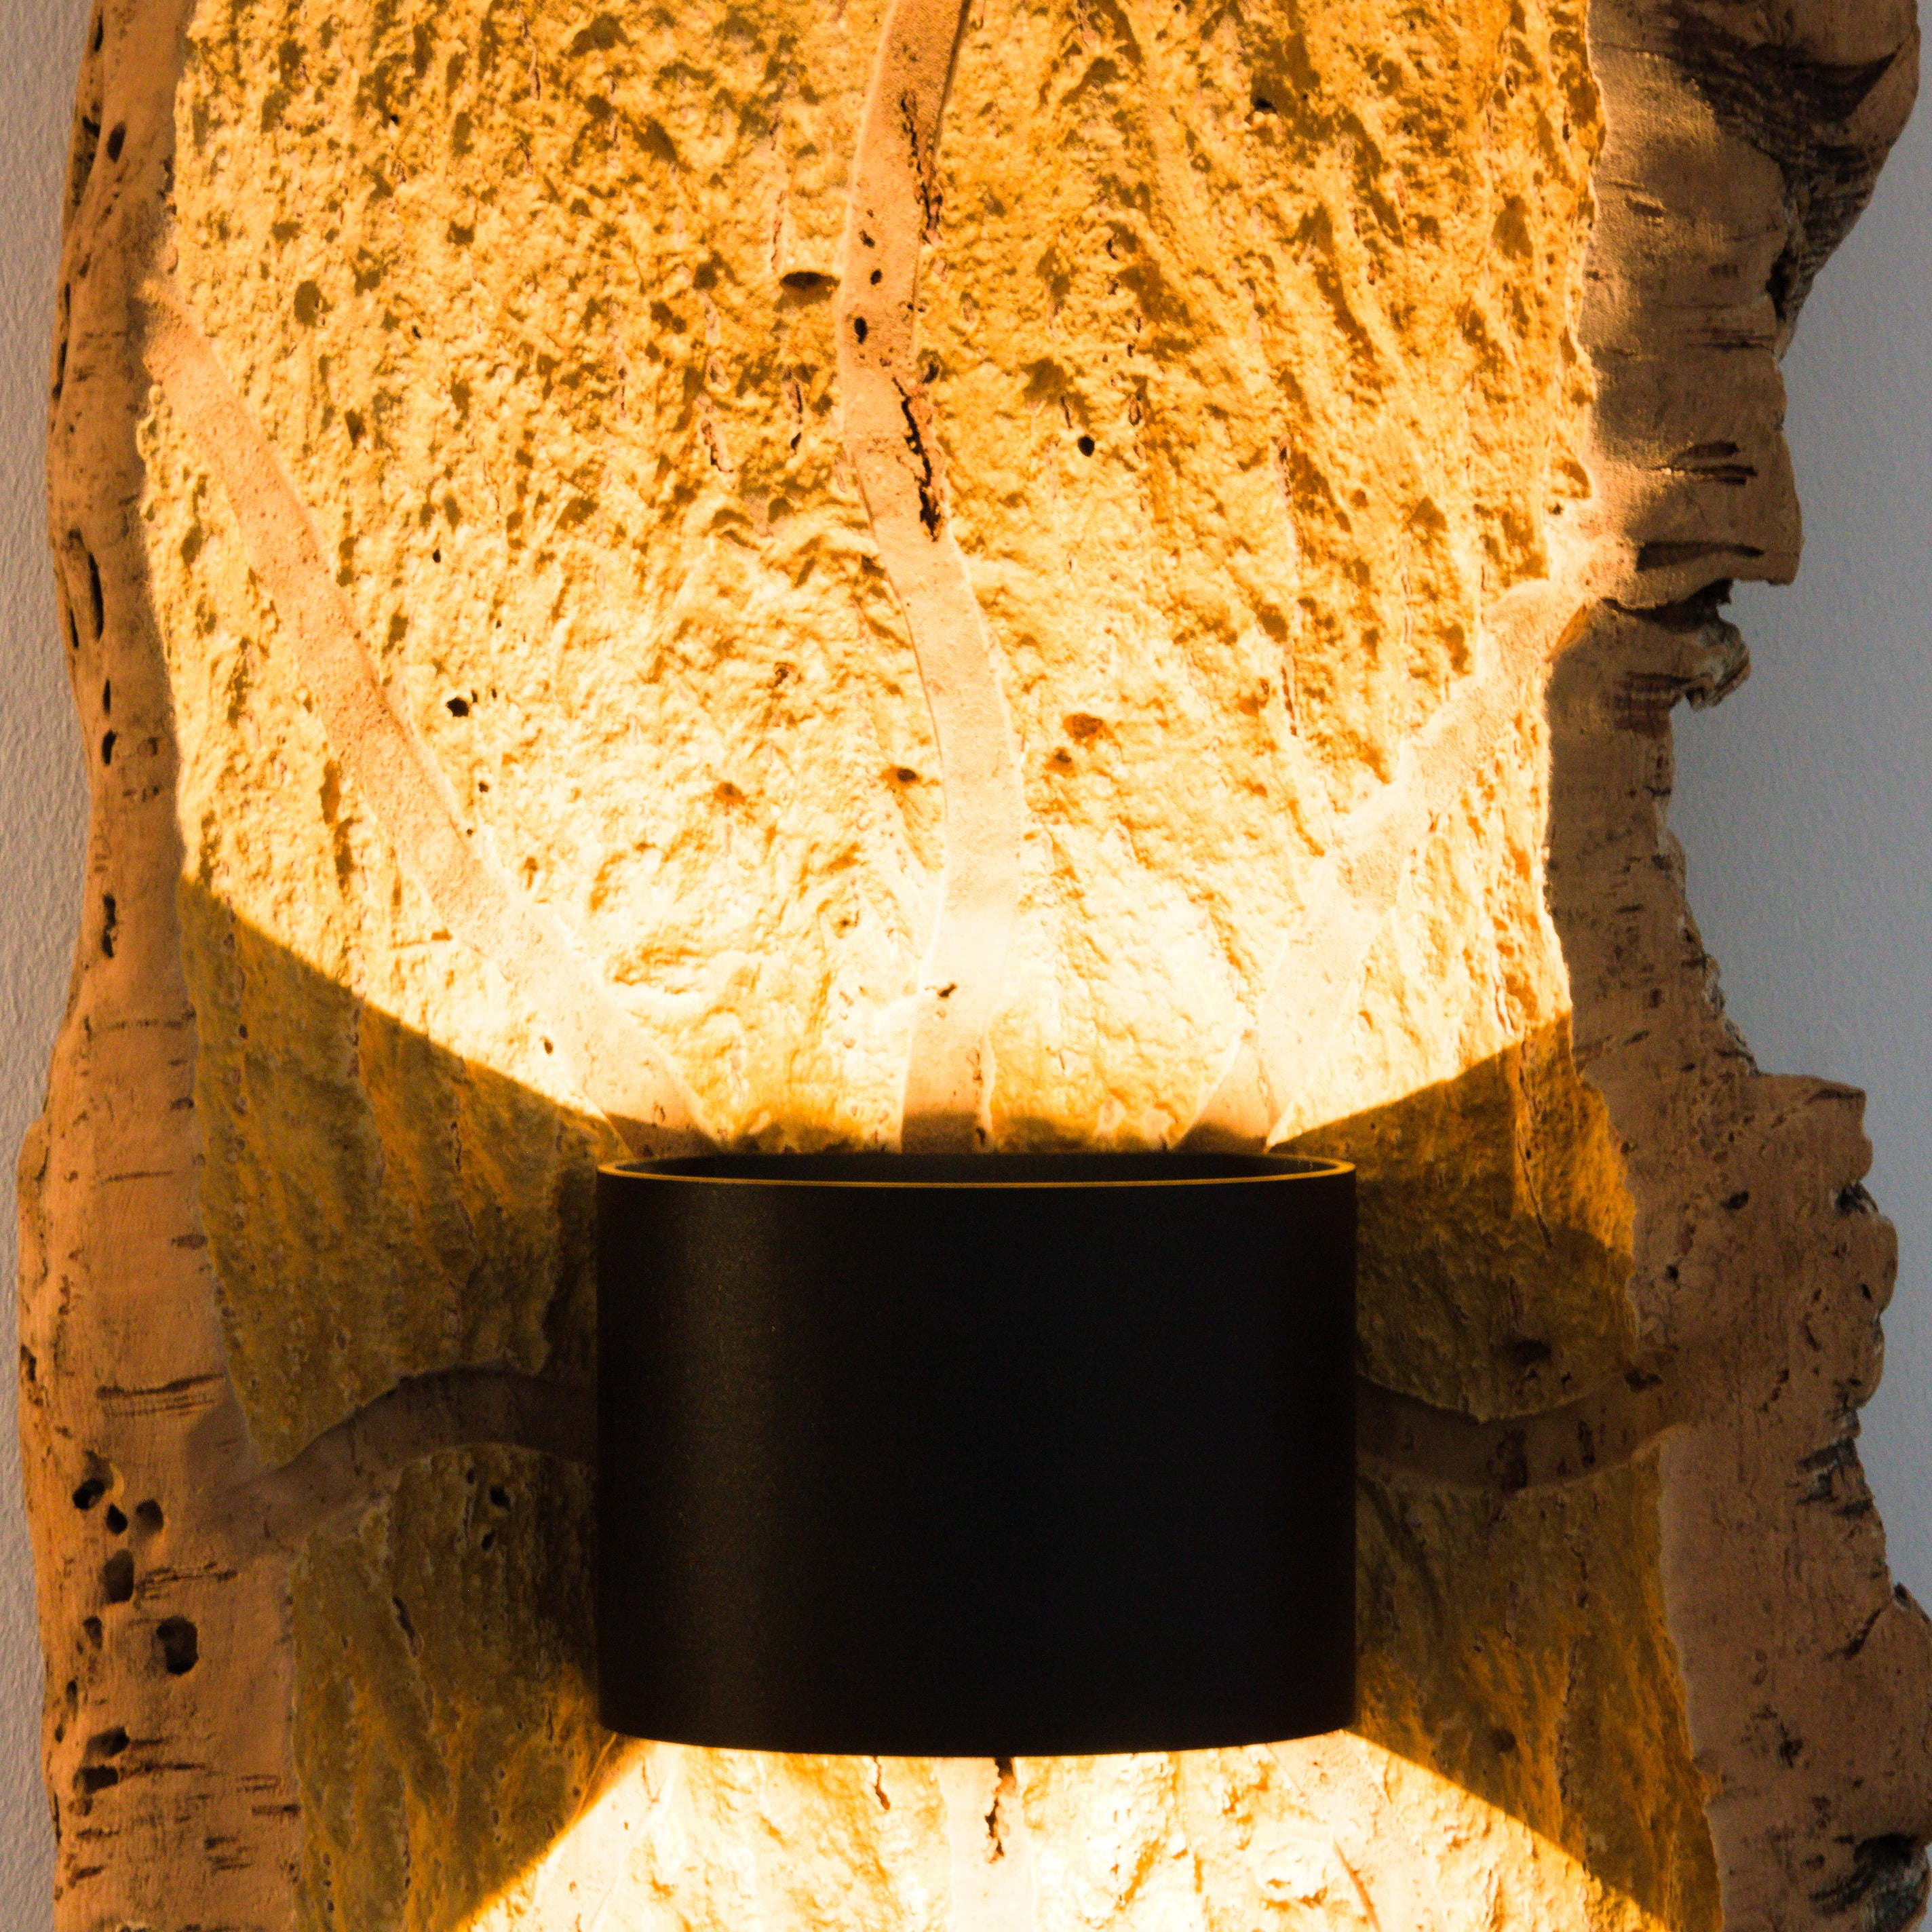 verKORKst lampada da parete wireless premium realizzata in corteccia di sughero * batteria ricaricabile * sensore di movimento * esclusiva lampada da parete vintage in stile country